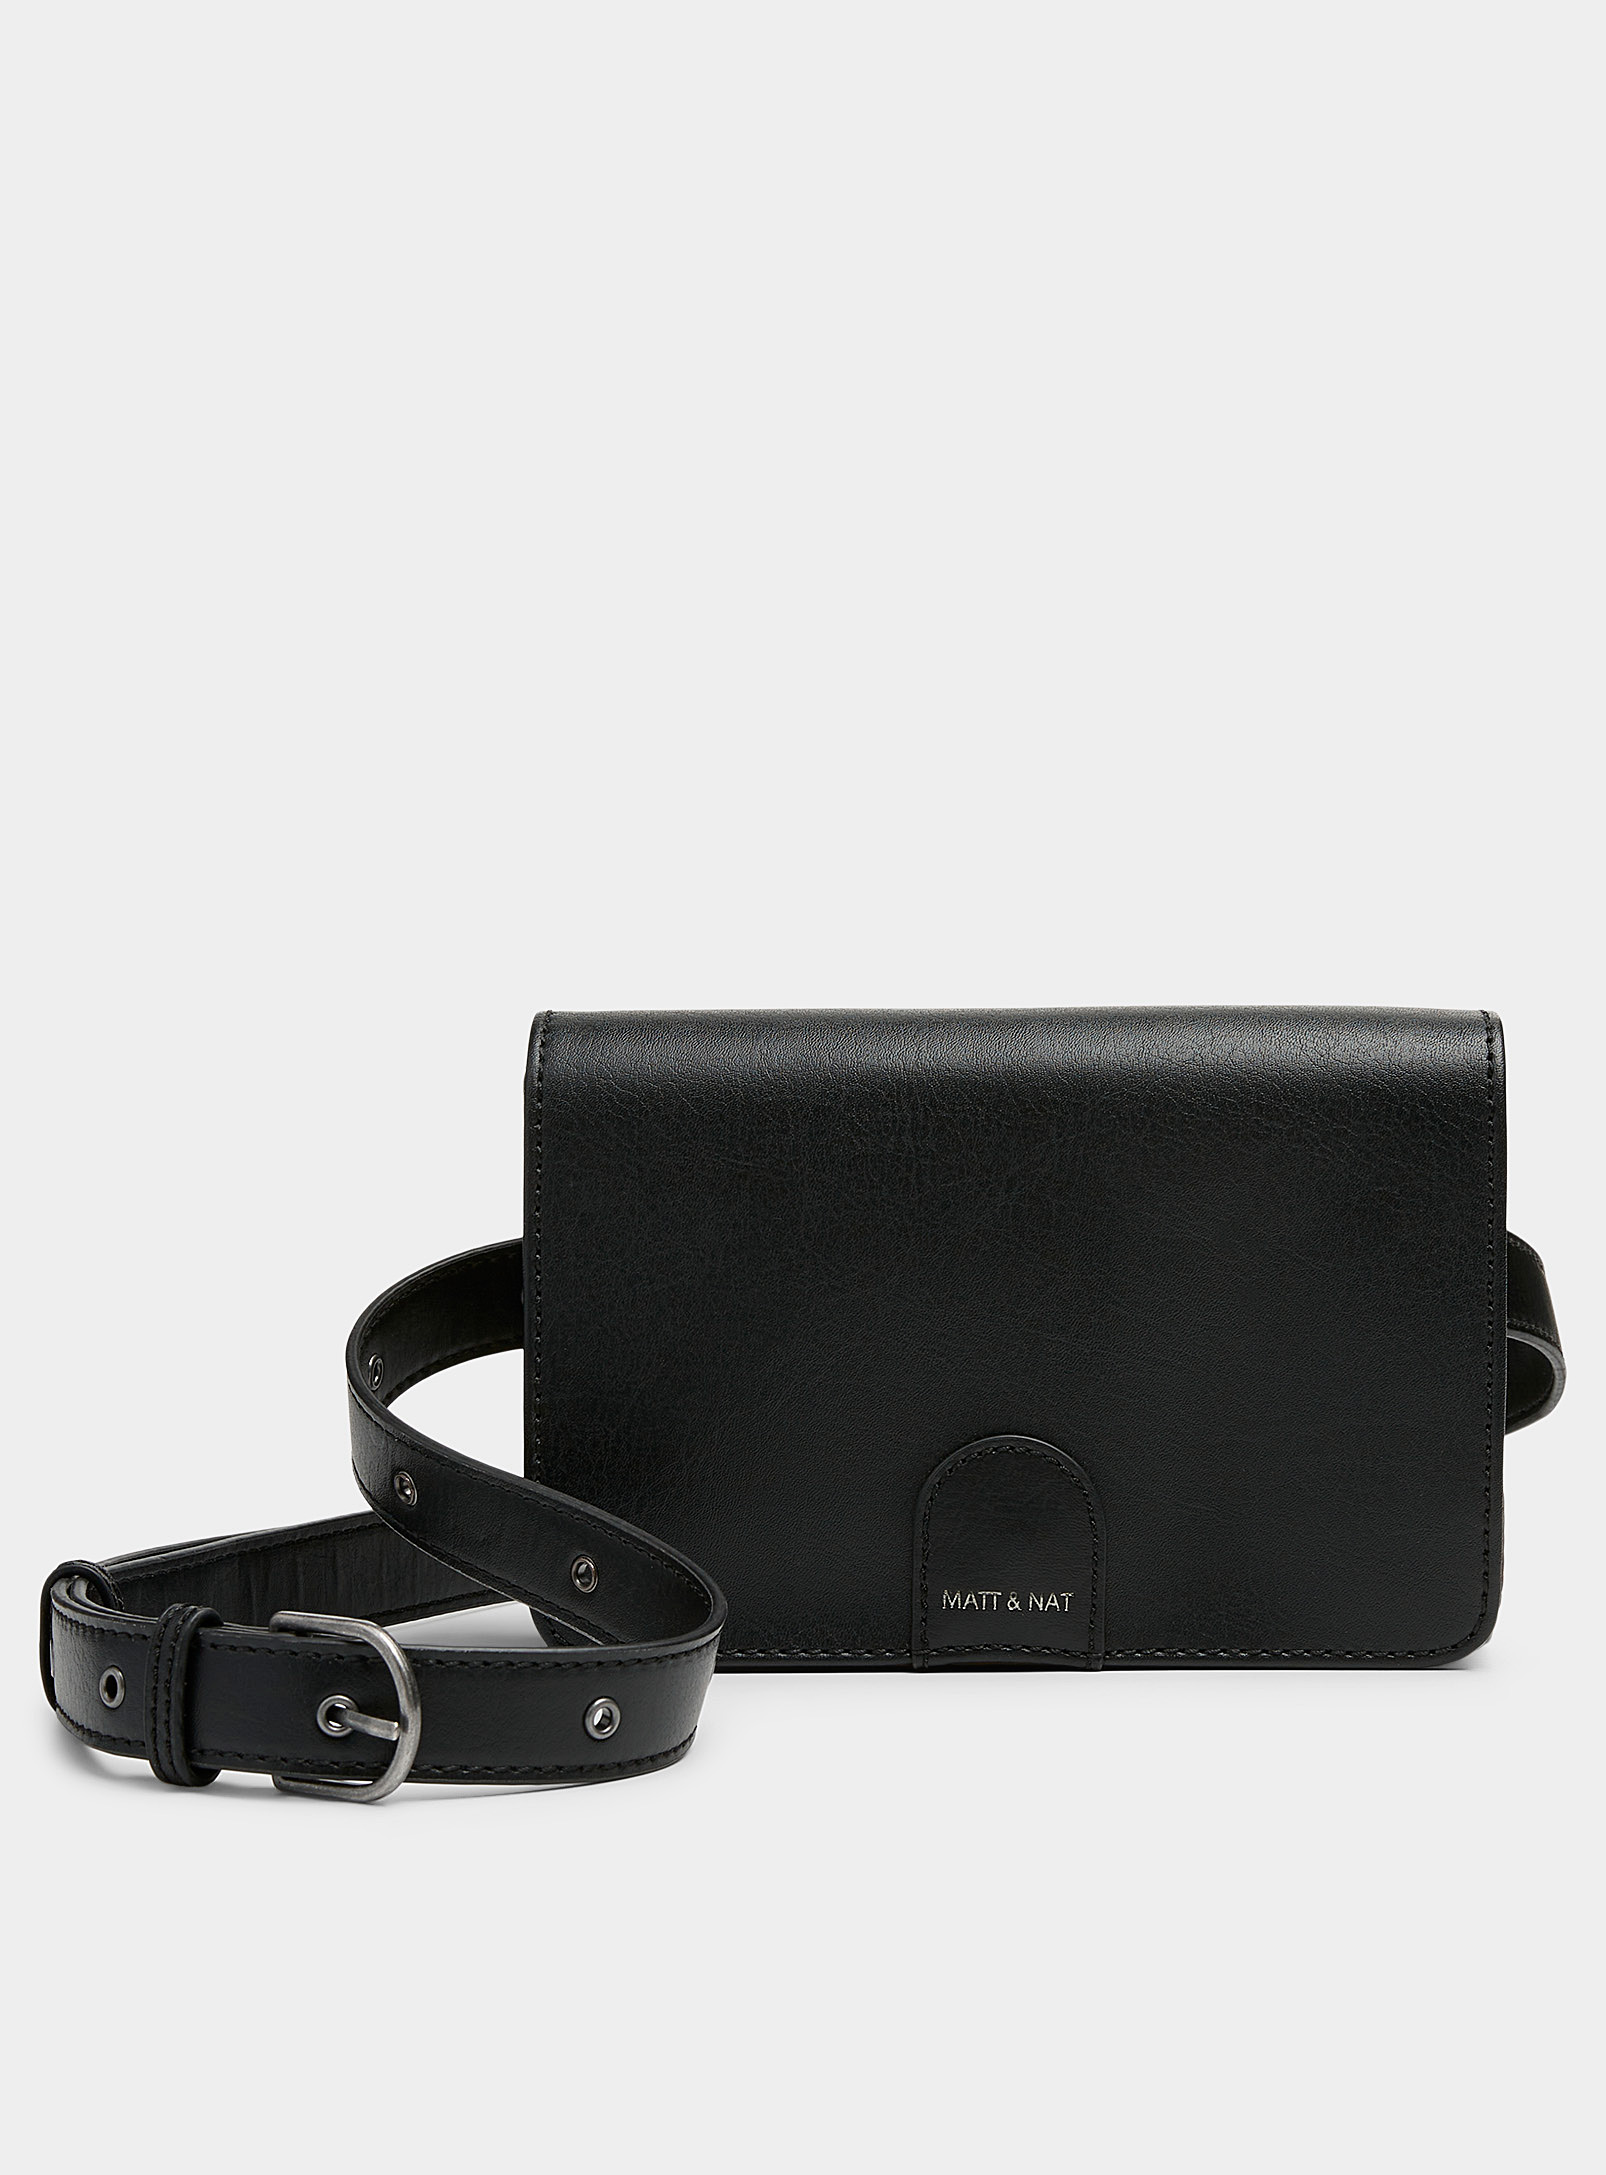 Matt & Nat Nino Minimalist Flap Belt Bag In Black